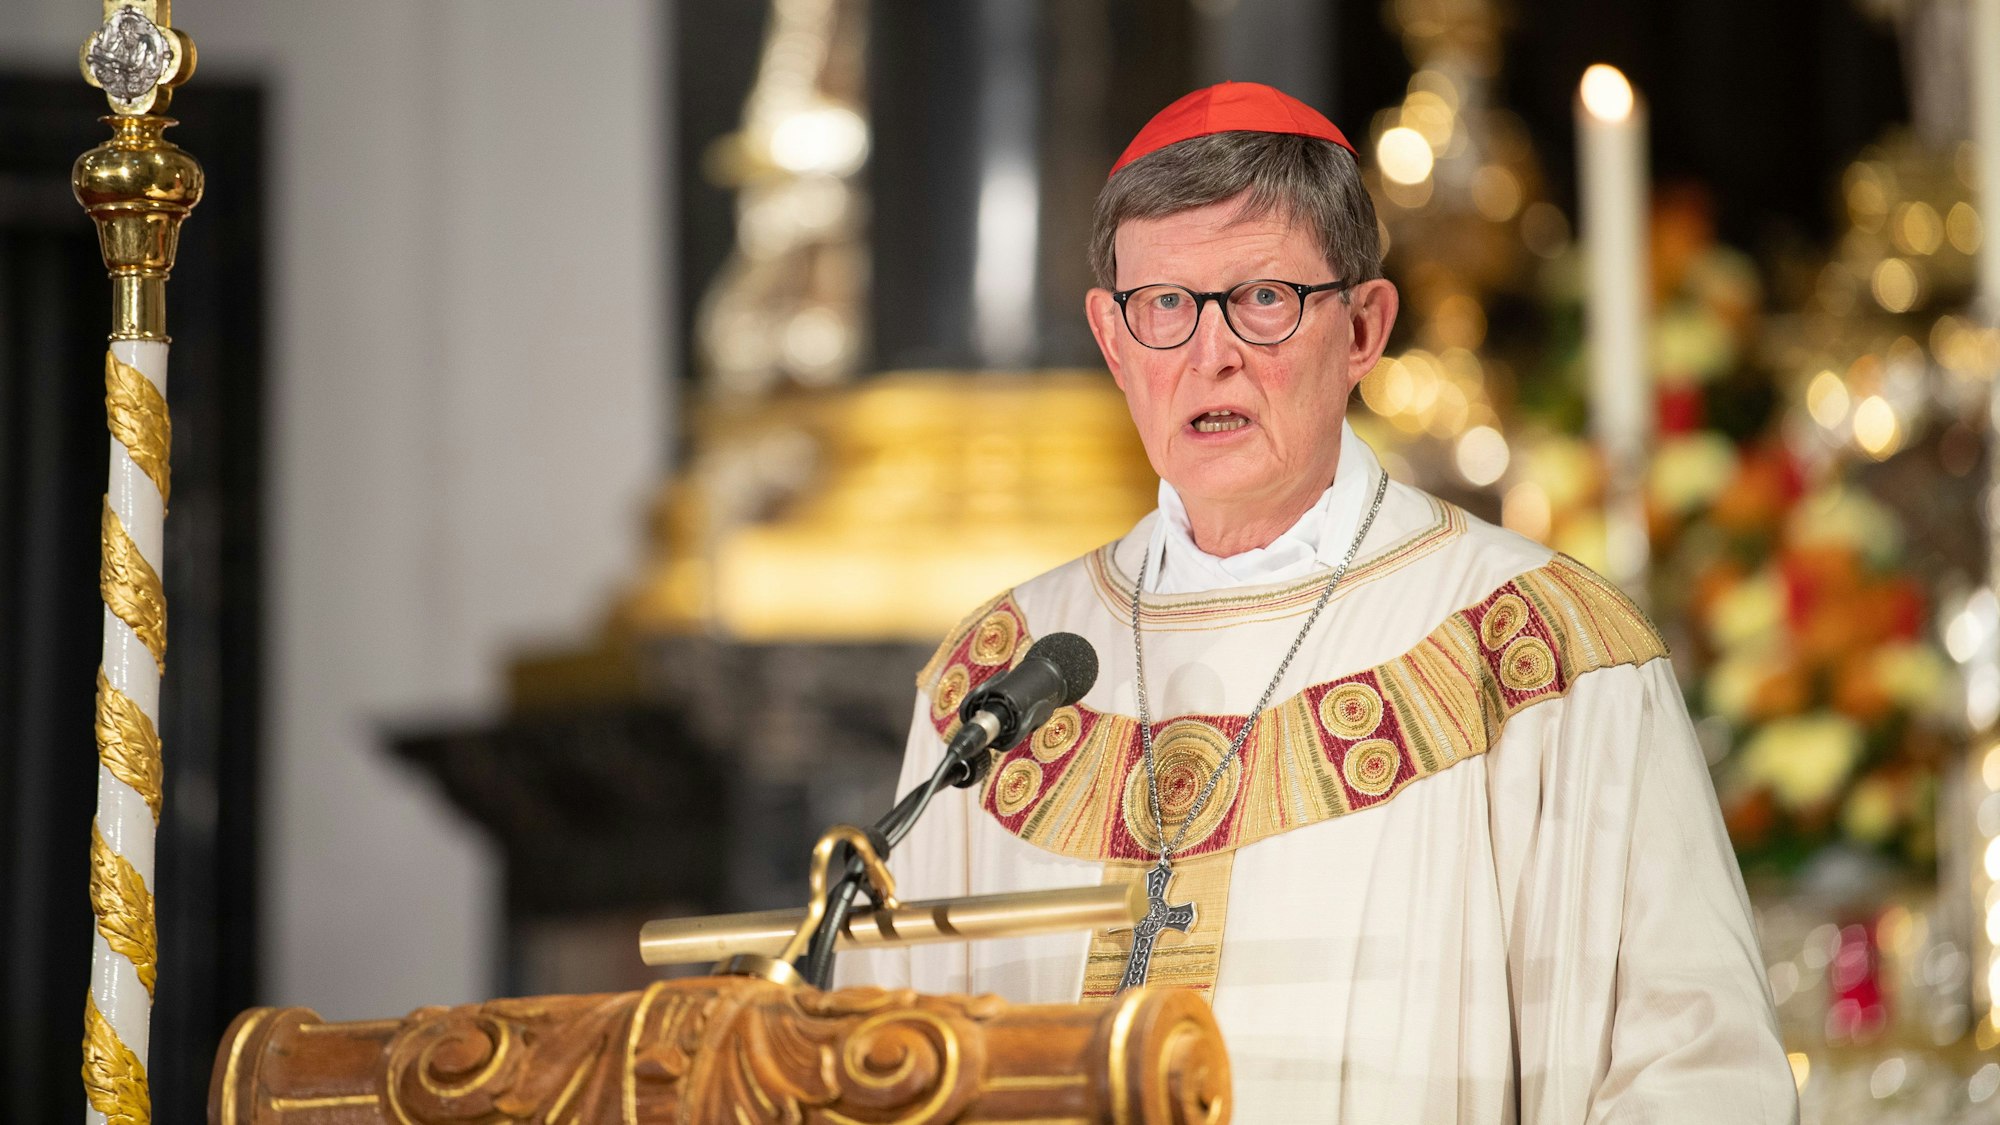 Rainer Maria Kardinal Woelki, Erzbischof von Köln, in festlichem Ornat und rotem Bischofskäppchen, predigt von einer goldverzierten hölzernen Kanzel in einem opulent ausgestatteten Kircheninnenraum.